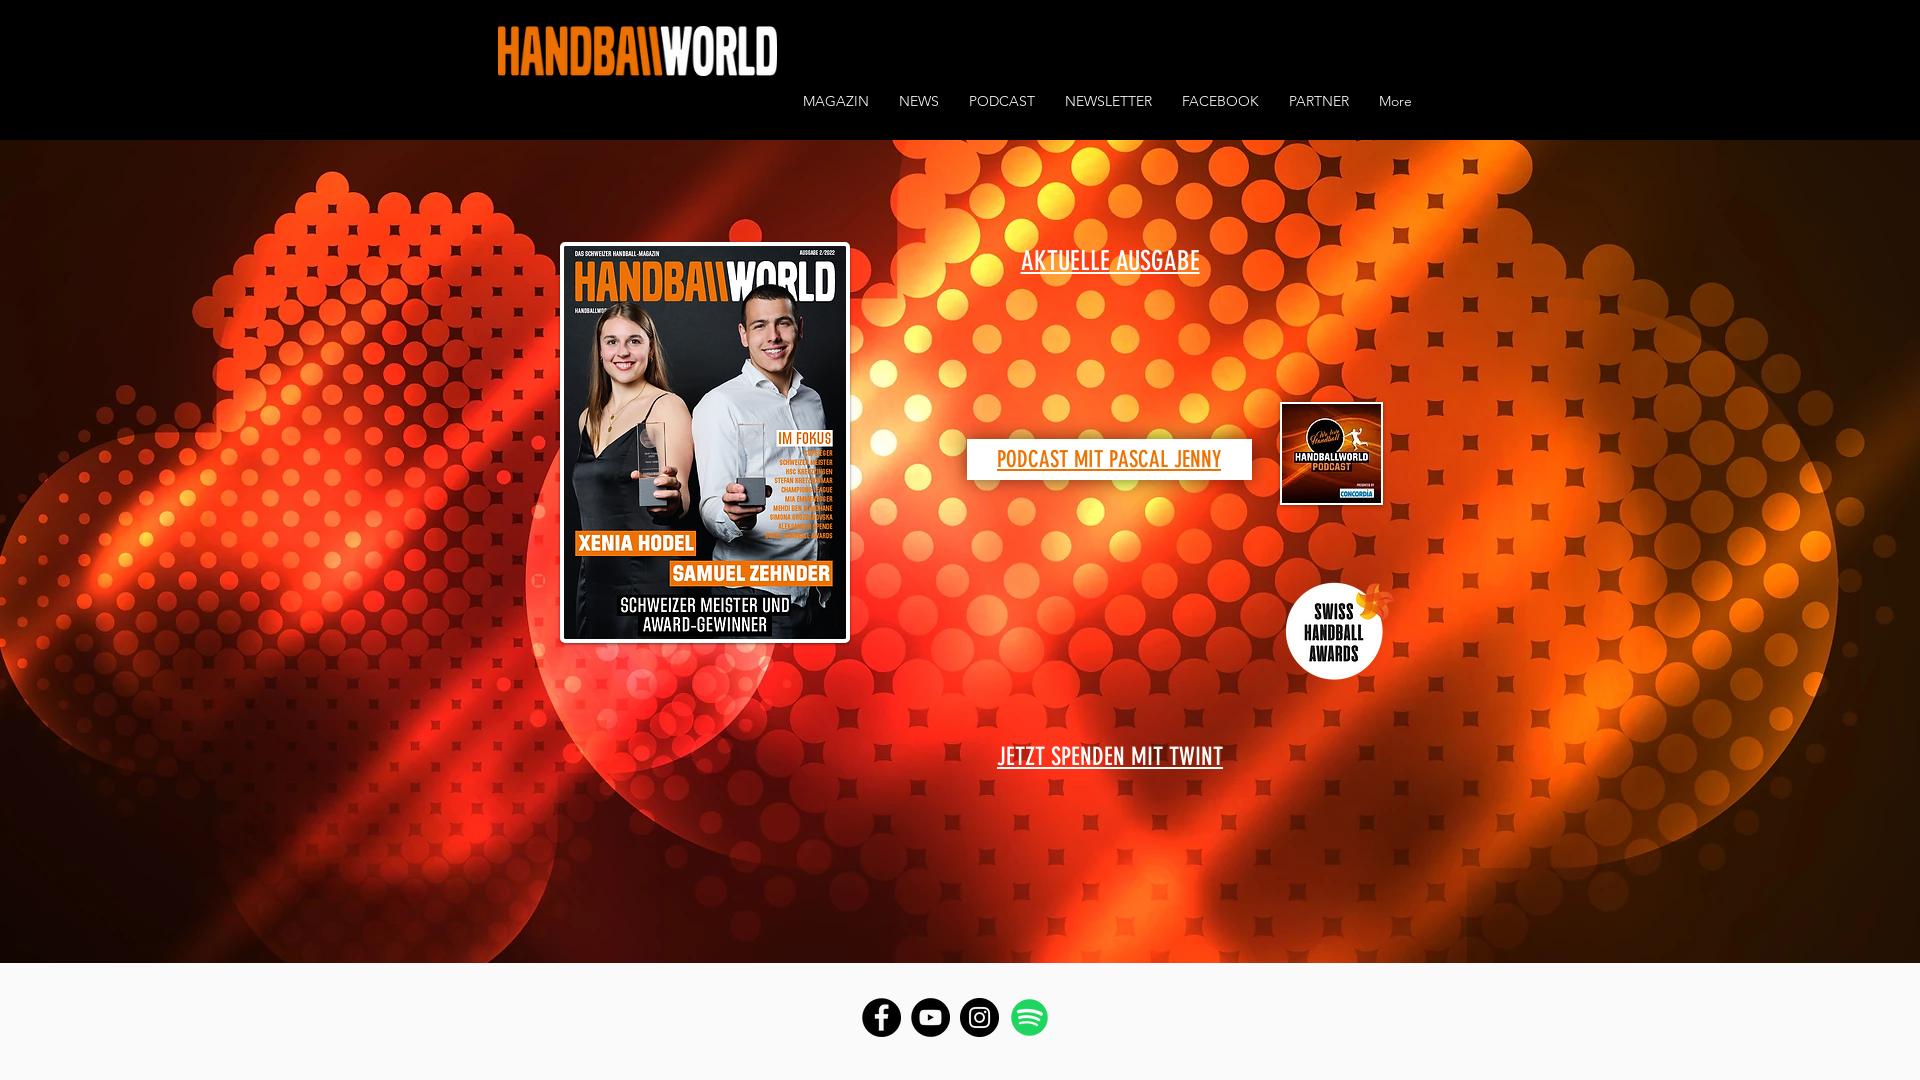 Website User Bewertung zu www.handballworld.com